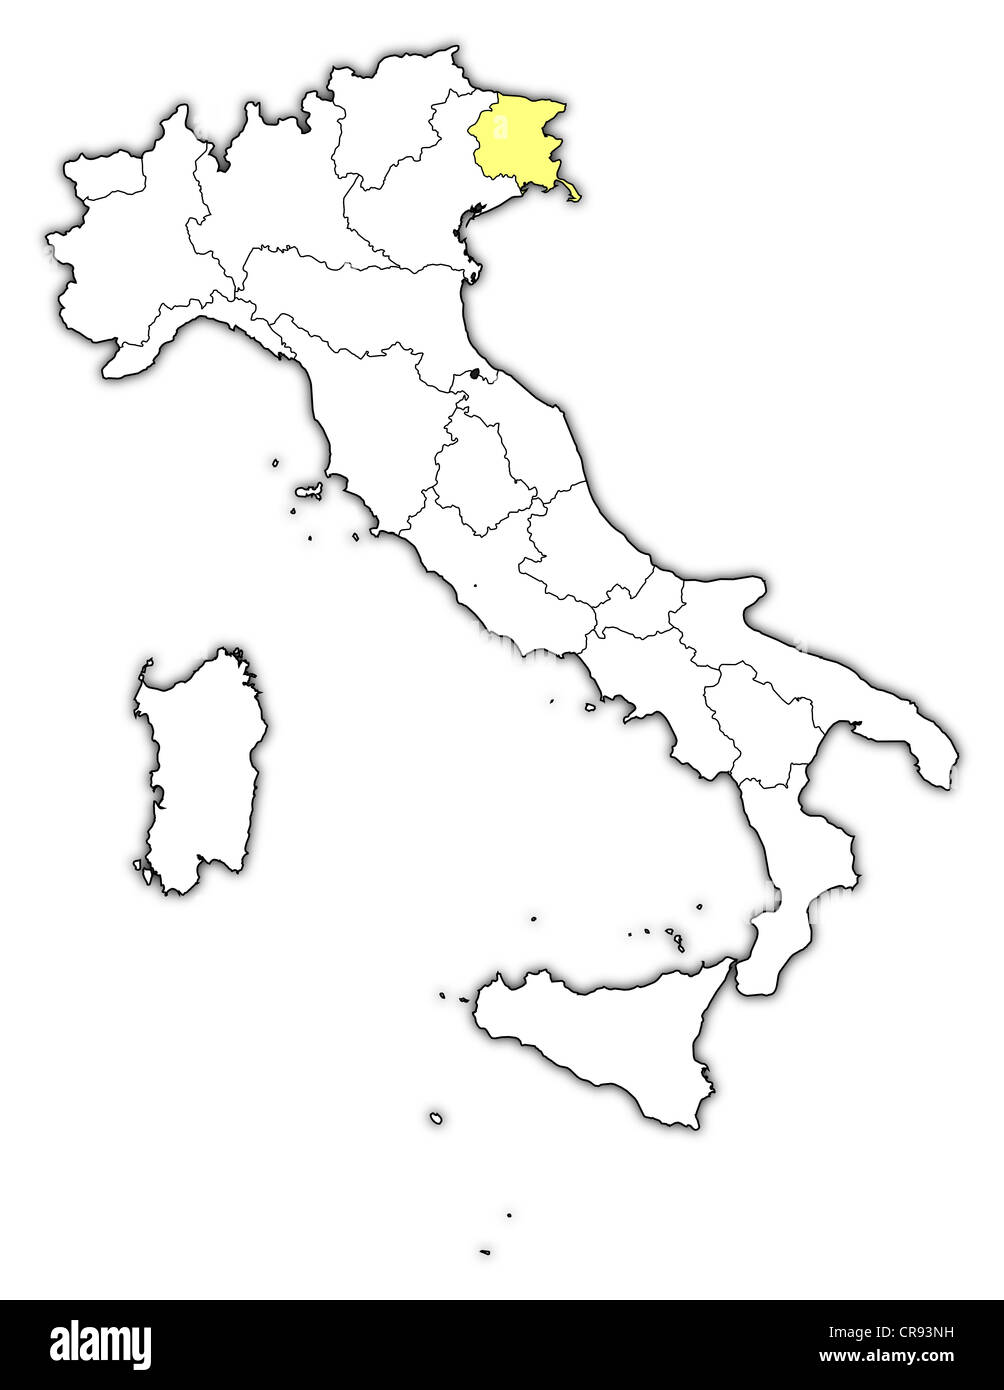 Politische Karte von Italien mit den mehreren Regionen Friaul-Julisch Venetien wo markiert ist. Stockfoto